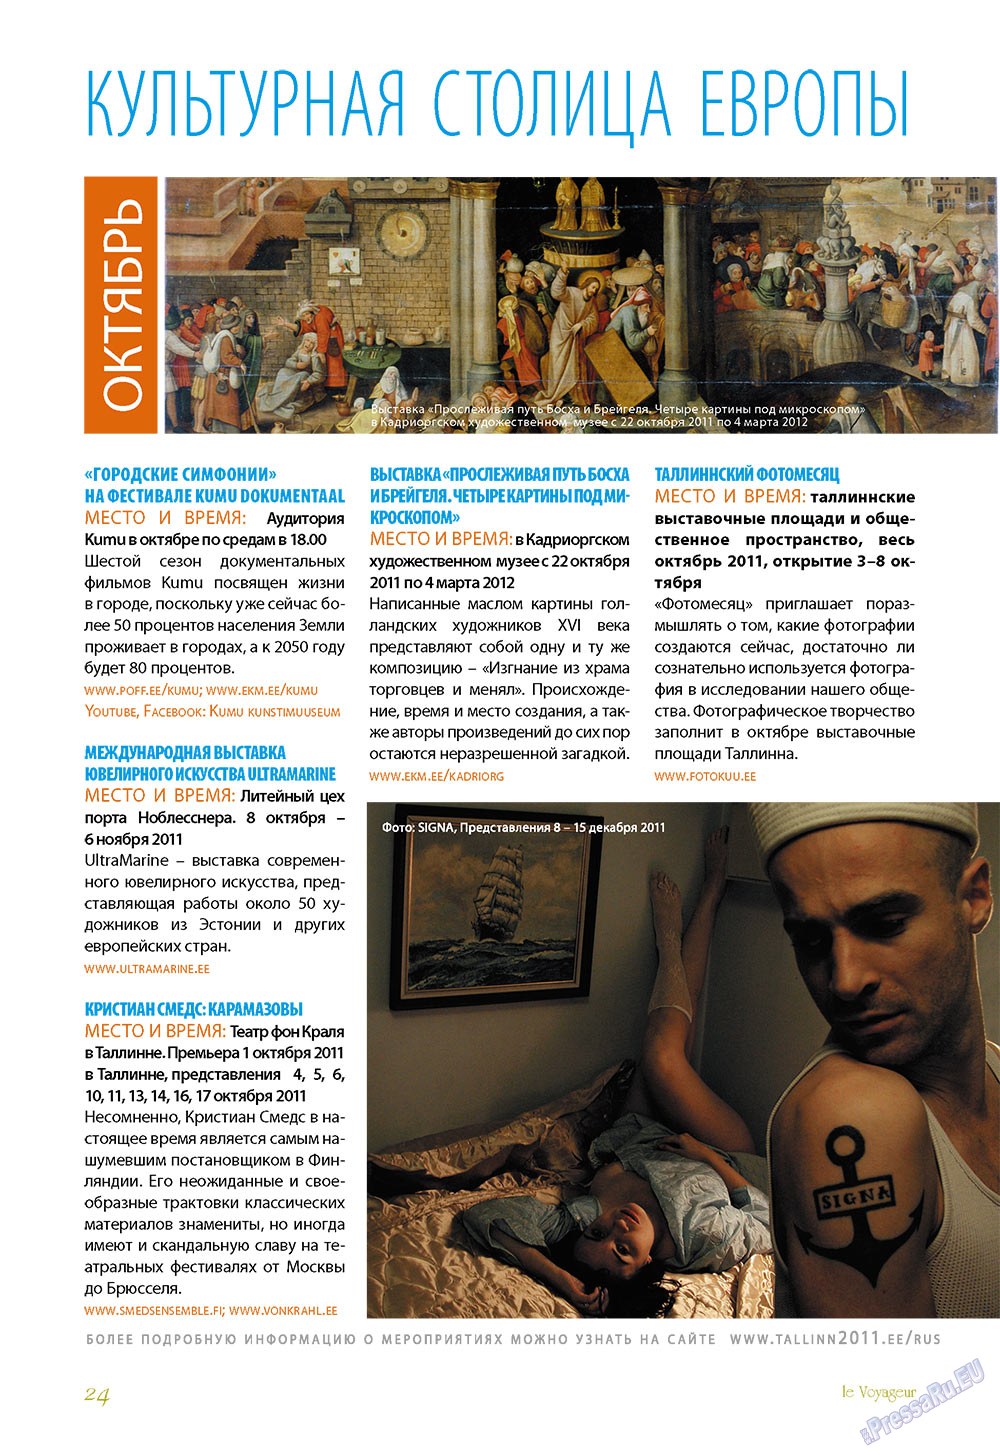 Le Voyageur (журнал). 2011 год, номер 18, стр. 26